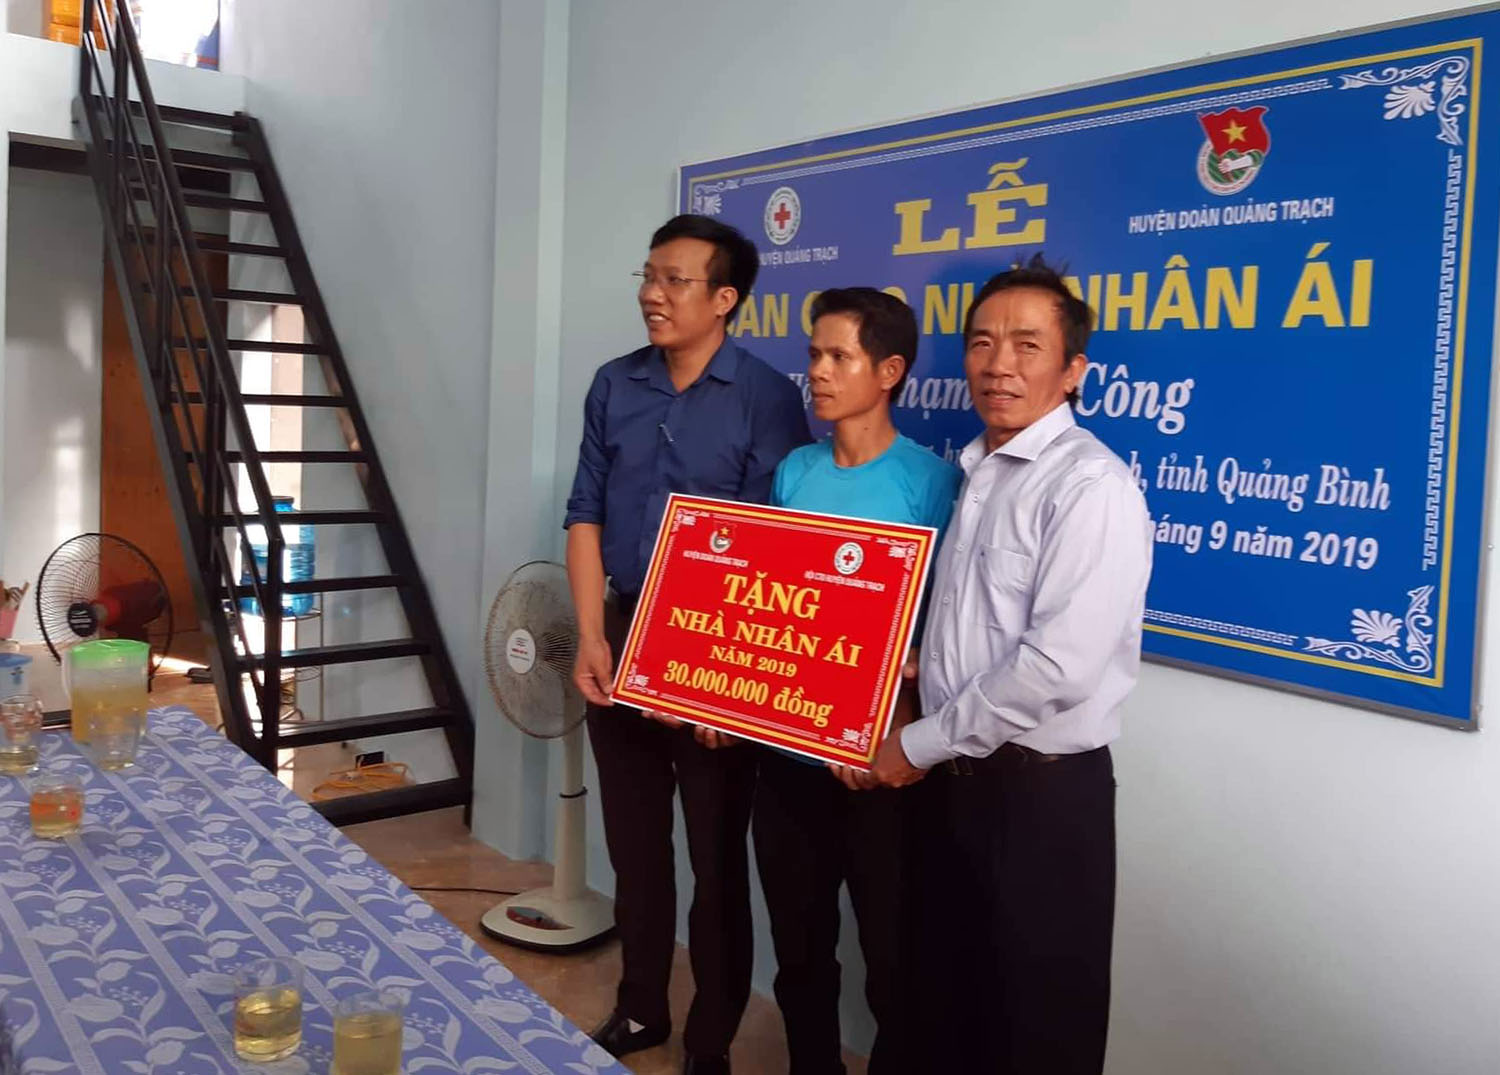 Đại diện Hội Chữ thập đỏ và Huyện đoàn Quảng Trạch bàn giao nhà nhân ái cho anh Phạm Chí Công